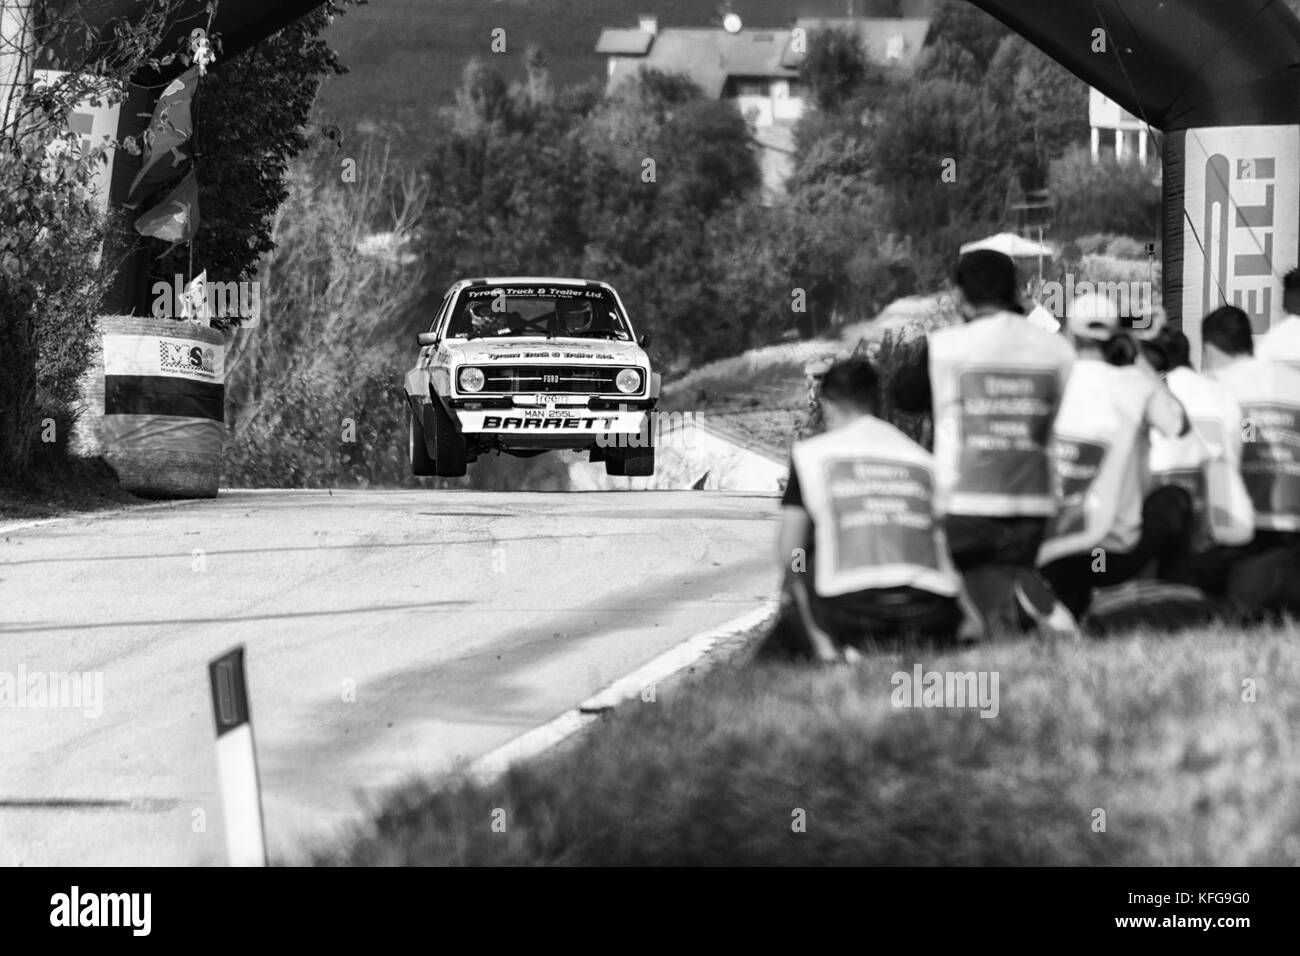 Saint-marin, Saint-Marin - ott 21 : Ford Escort rs 1977 rallye de voitures de course anciennes la légende 2017 la célèbre course historique de Saint-Marin Banque D'Images